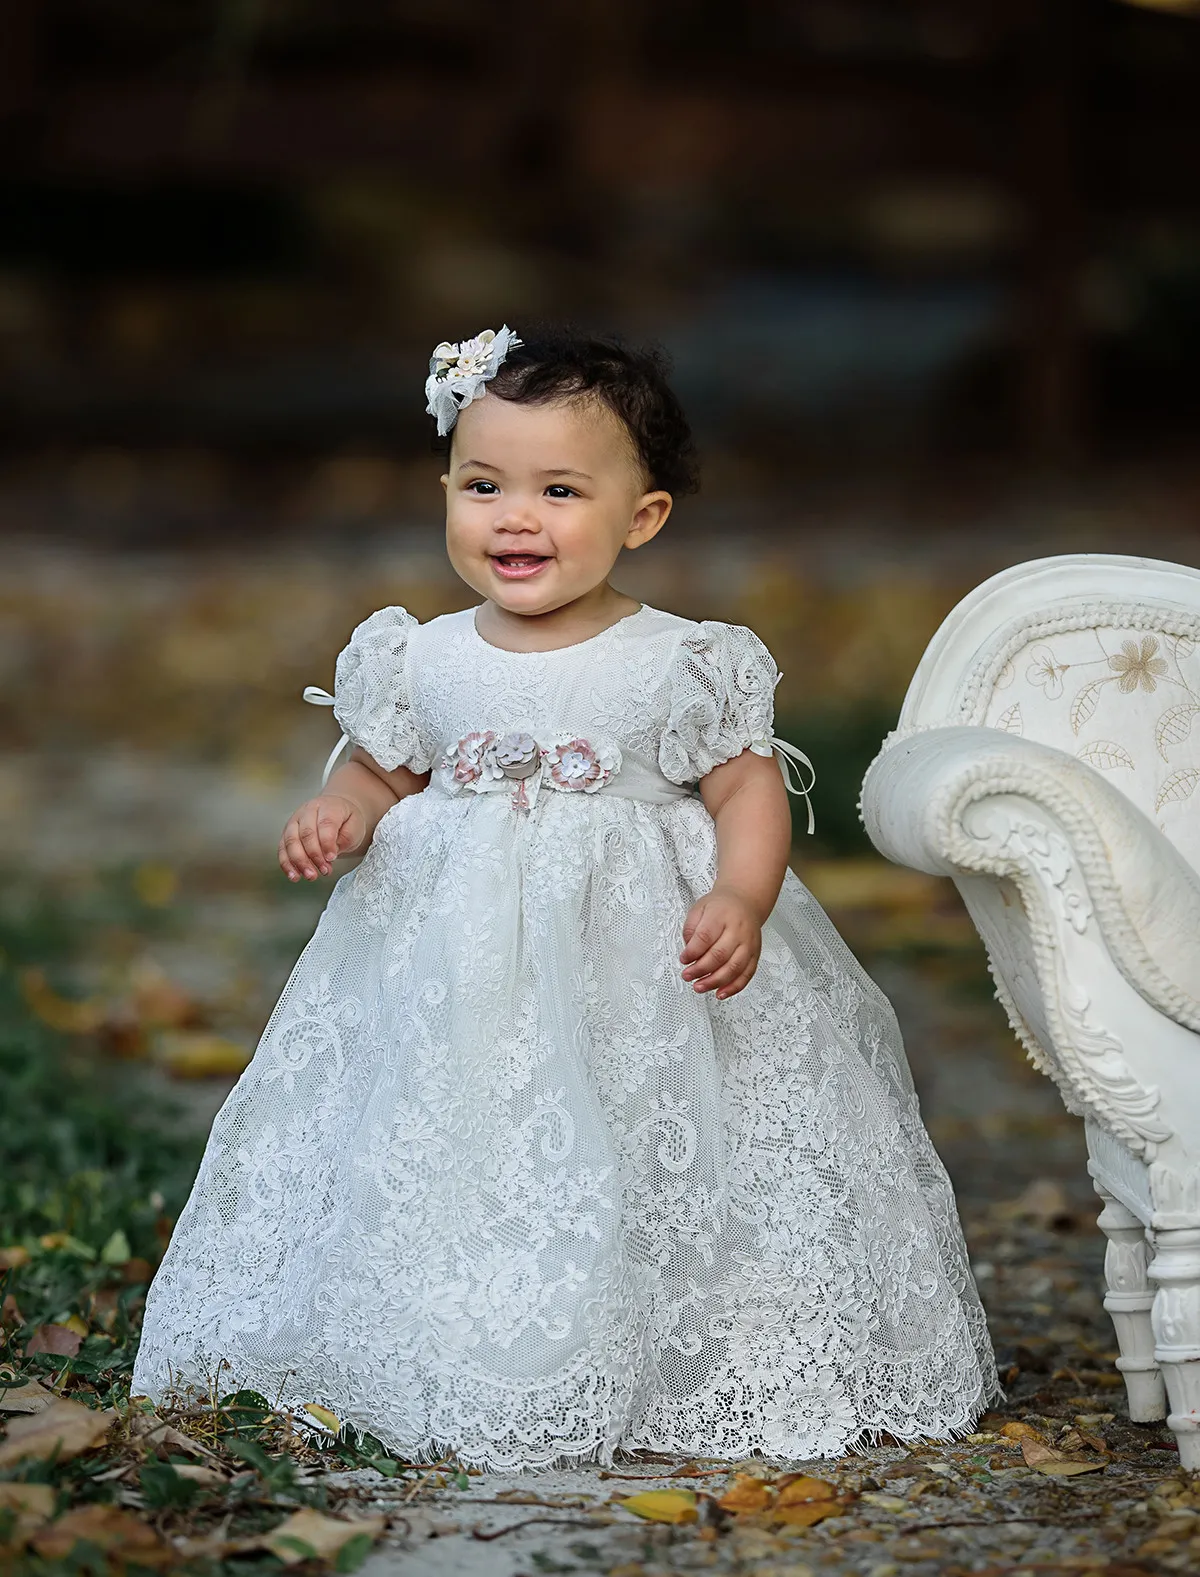 Yenidoğan Christenings Elbiseler 2017 için Vaftiz Adlandırma veya Nimet Gün Dantel Çiçek Kız Elbise Özel Made 1st Communion Elbise